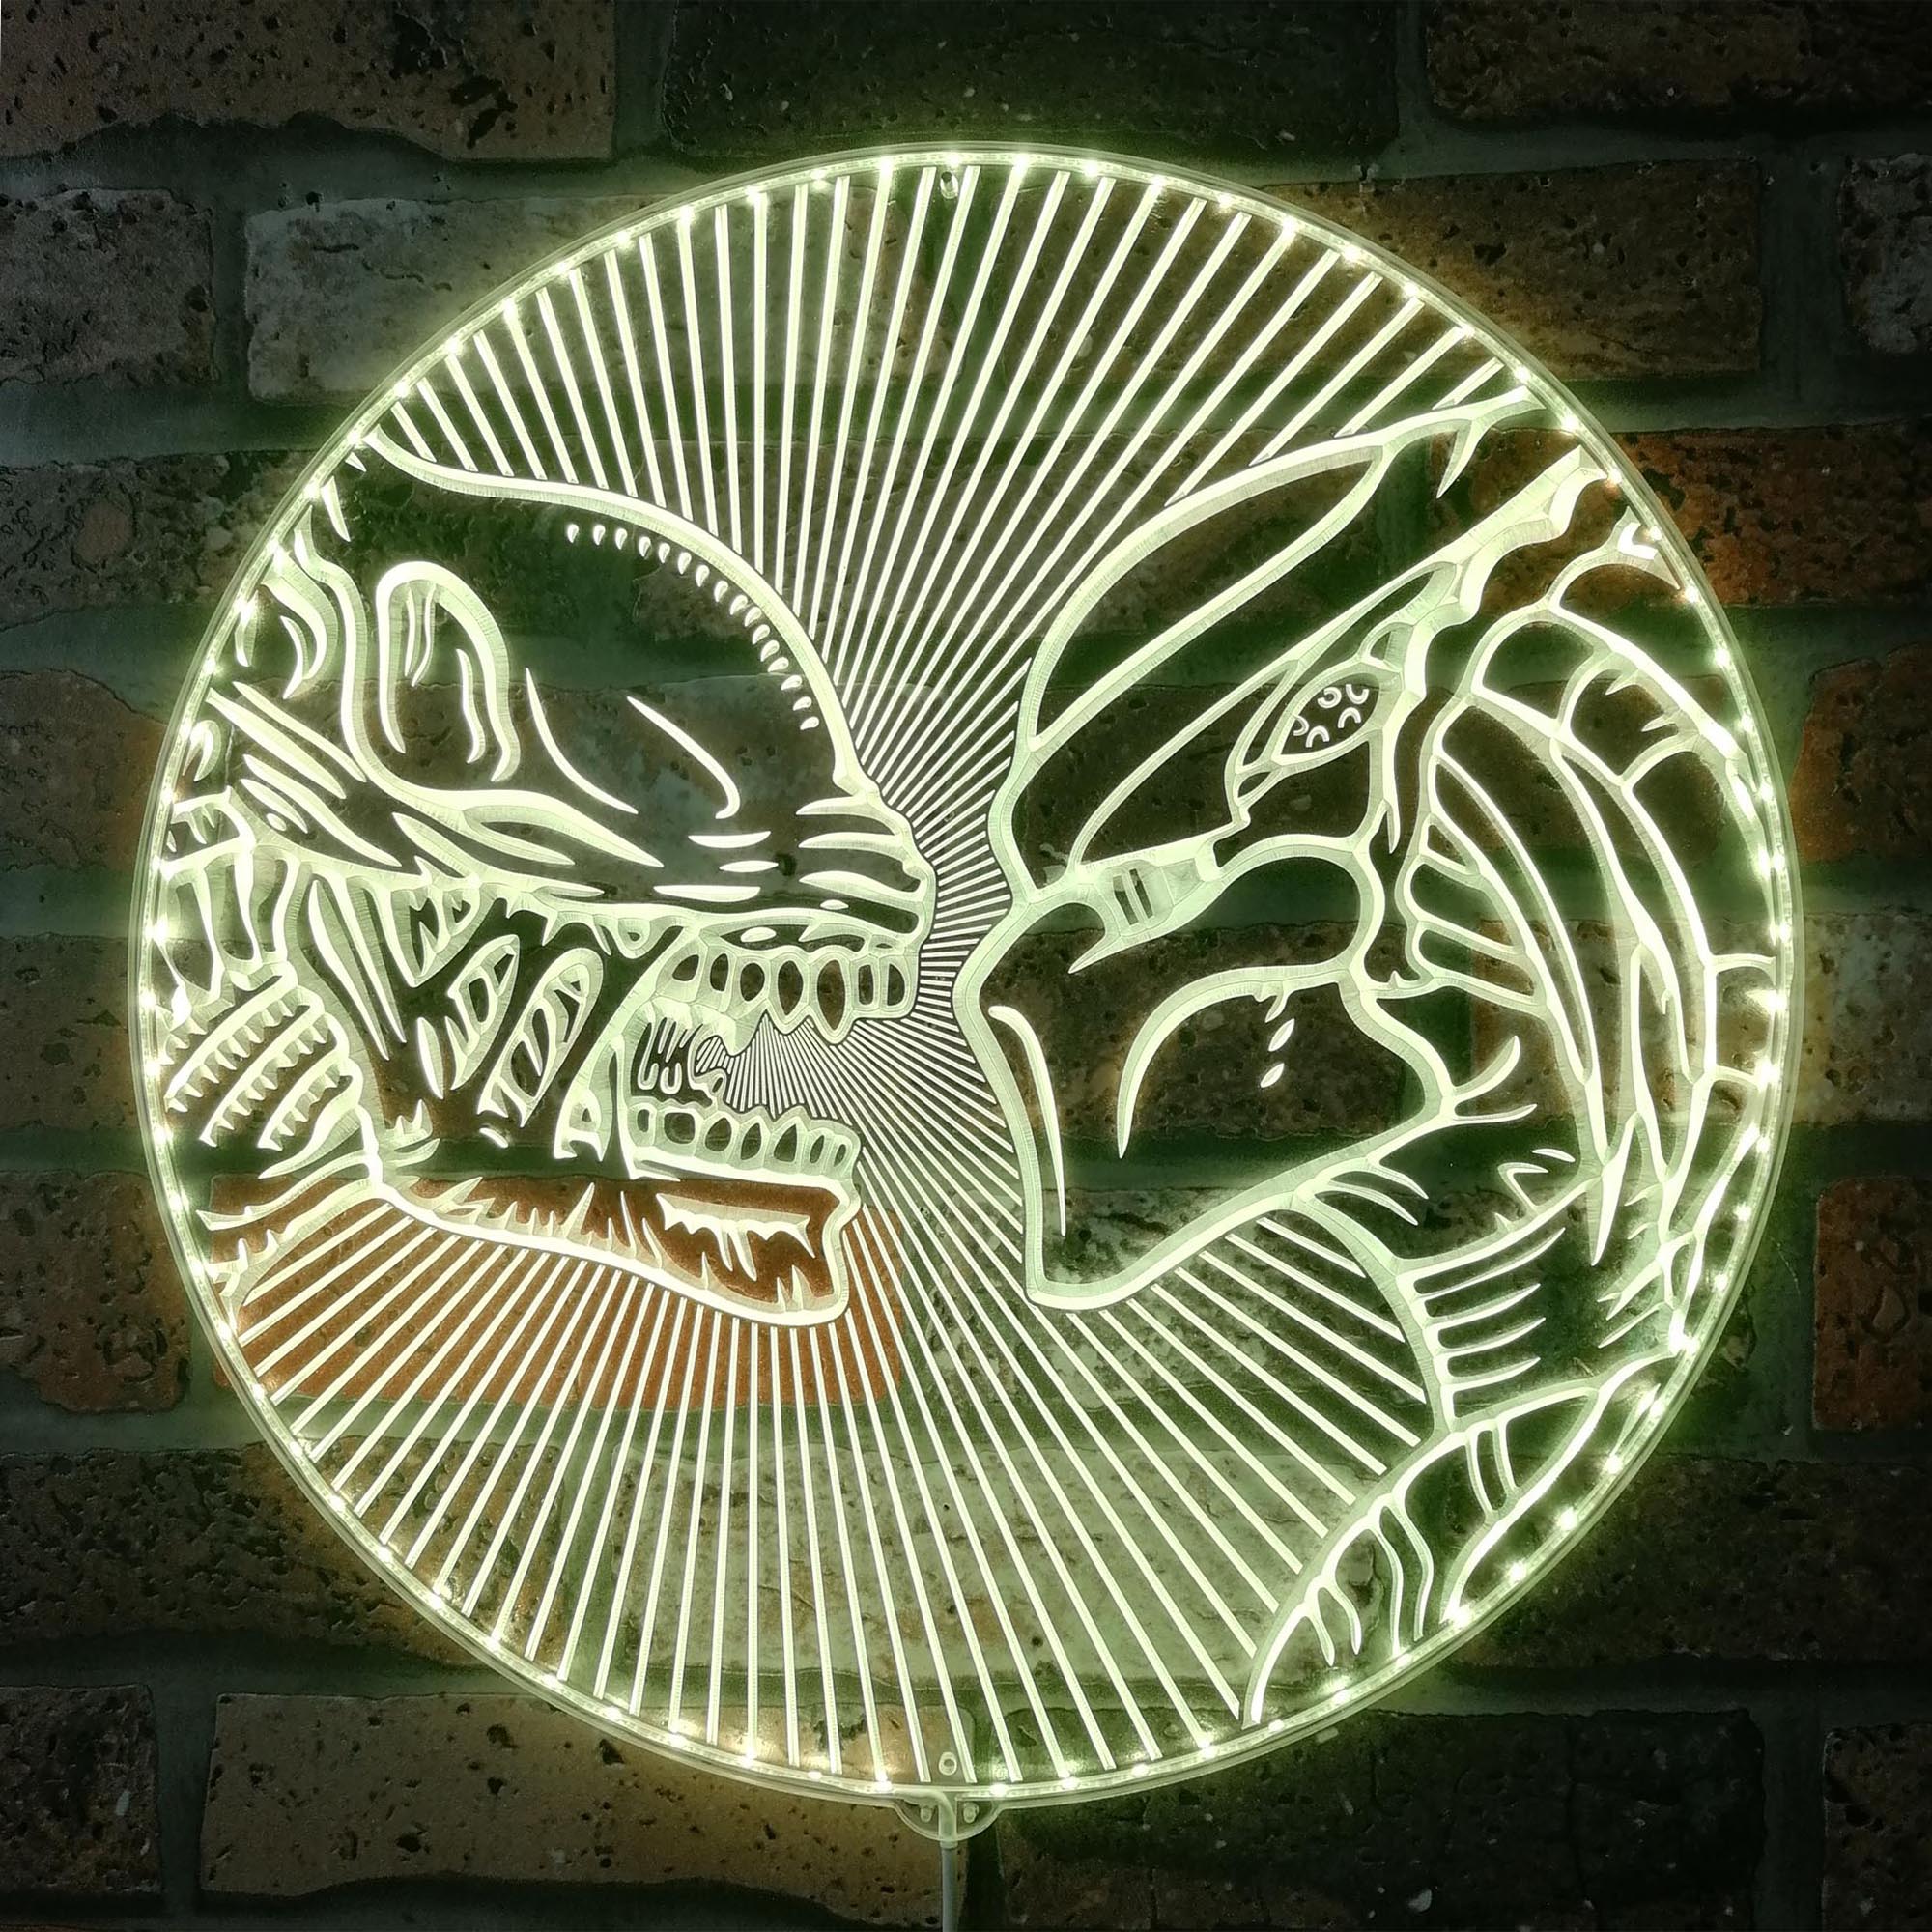 Alien vs. Predator Dynamic RGB Edge Lit LED Sign, Alien Movie Fans Gift